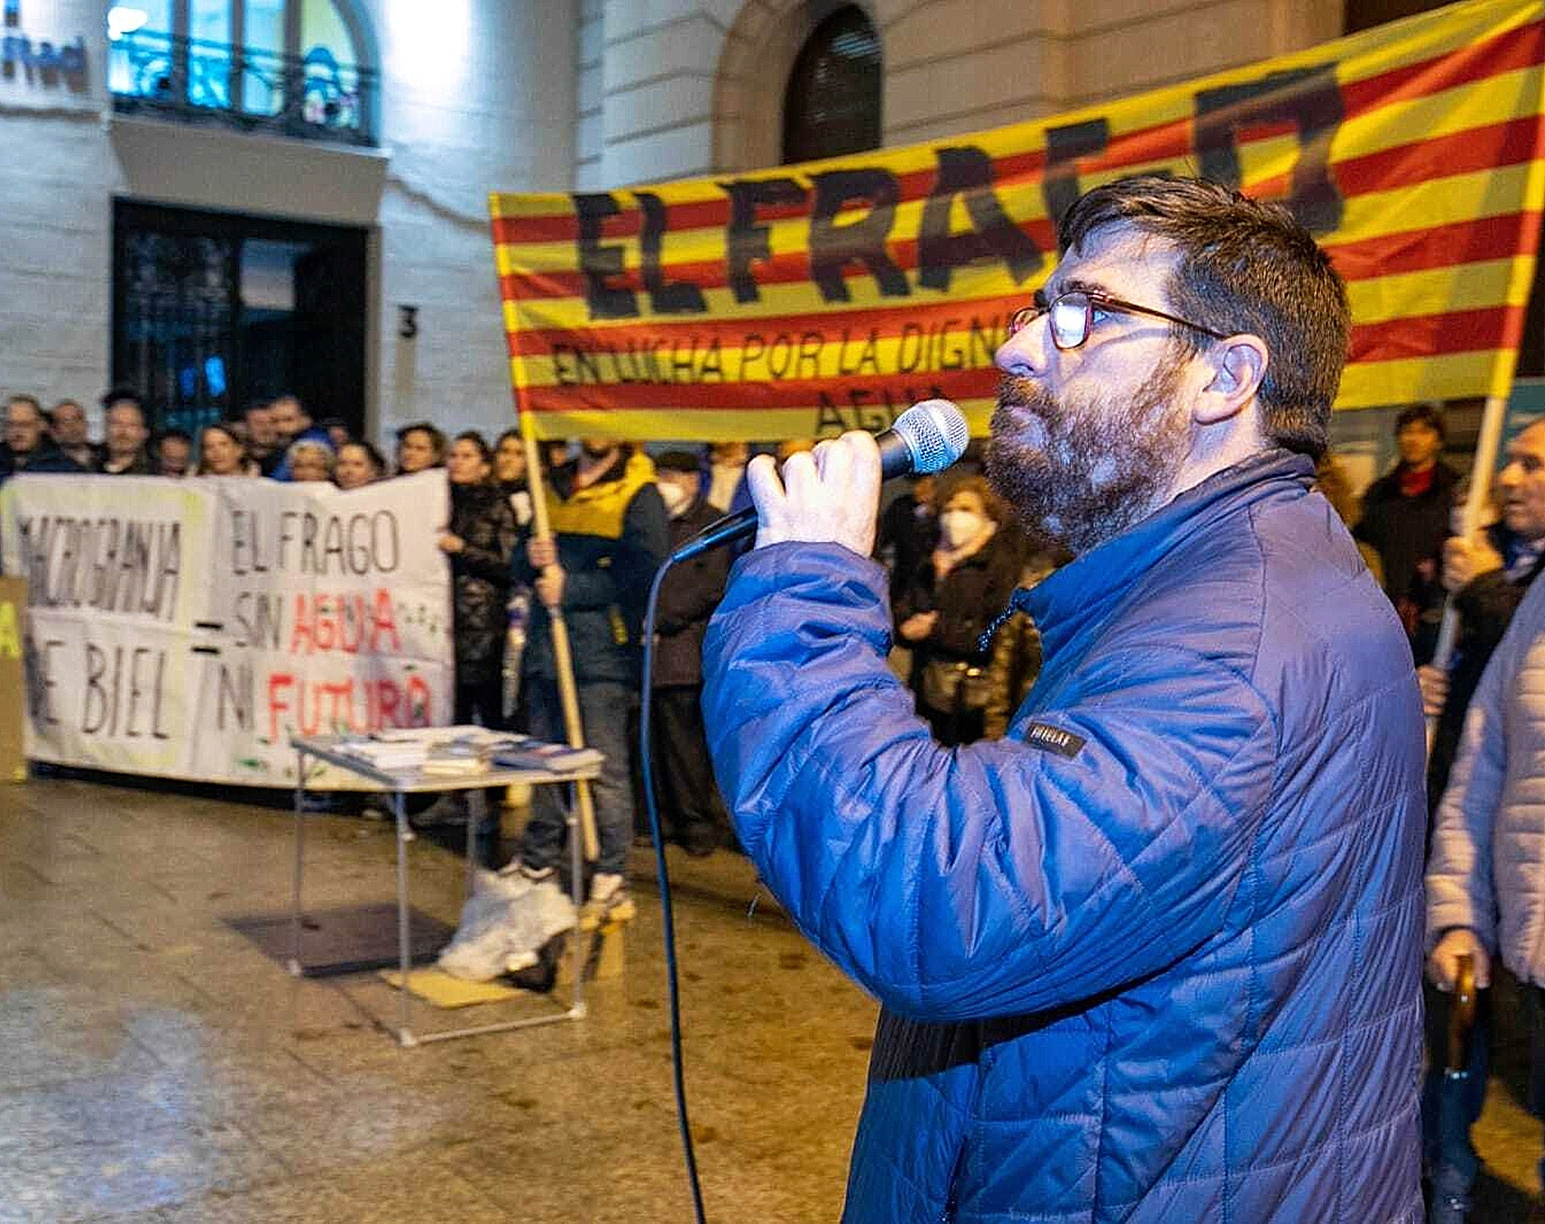 El adis del alcalde de la Espaa vaca "abandonado" por el PSOE: "Somos socialistas o socialistos?"